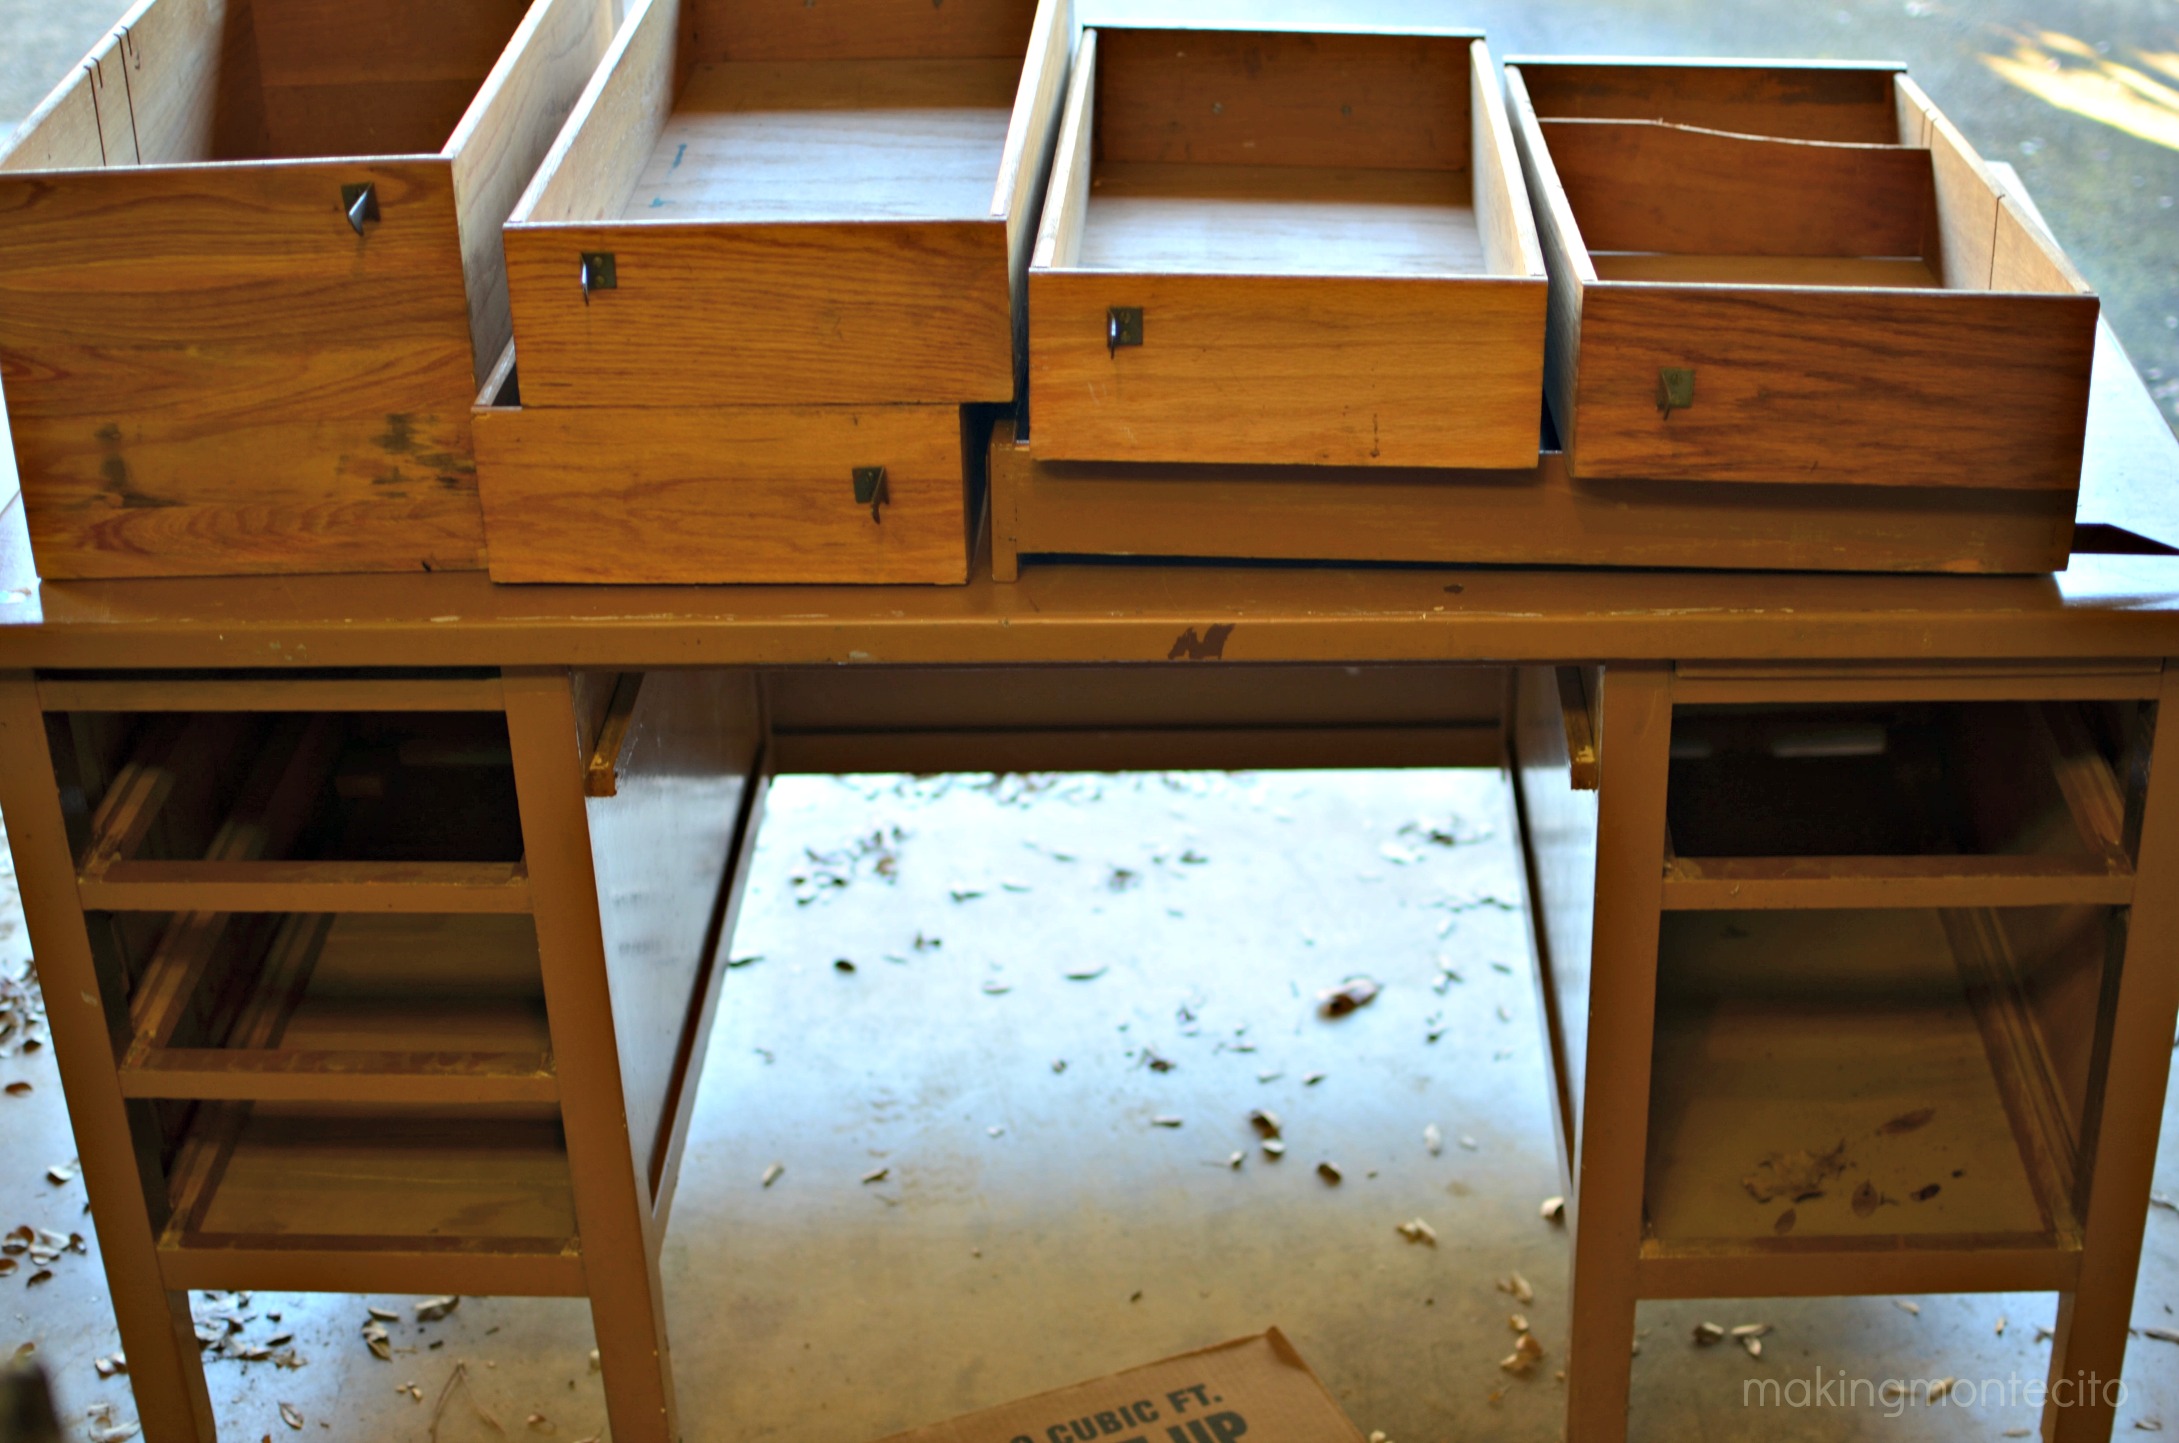 making montecito - old teachers desk makeover 2